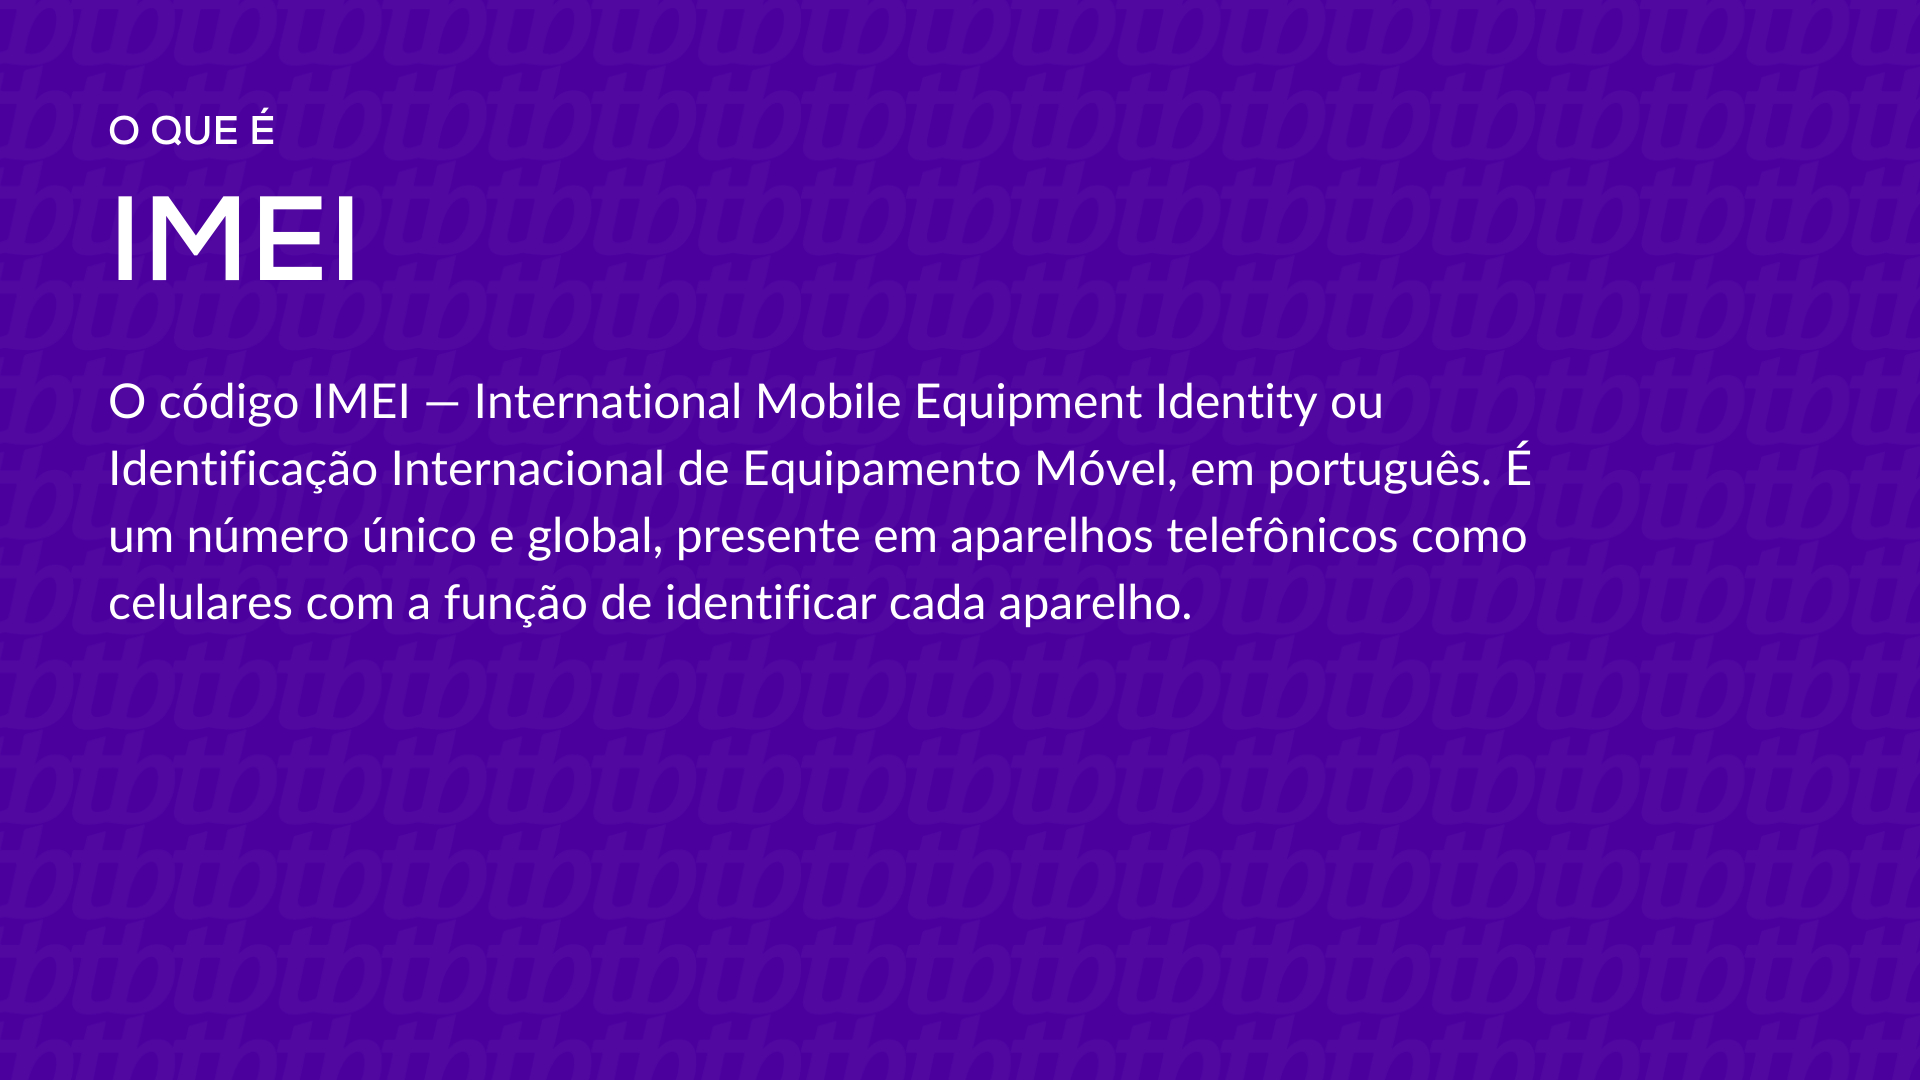 Segurança digital: saiba o que é IMEI, sua importância e como utilizar -  Secretaria da Segurança Pública